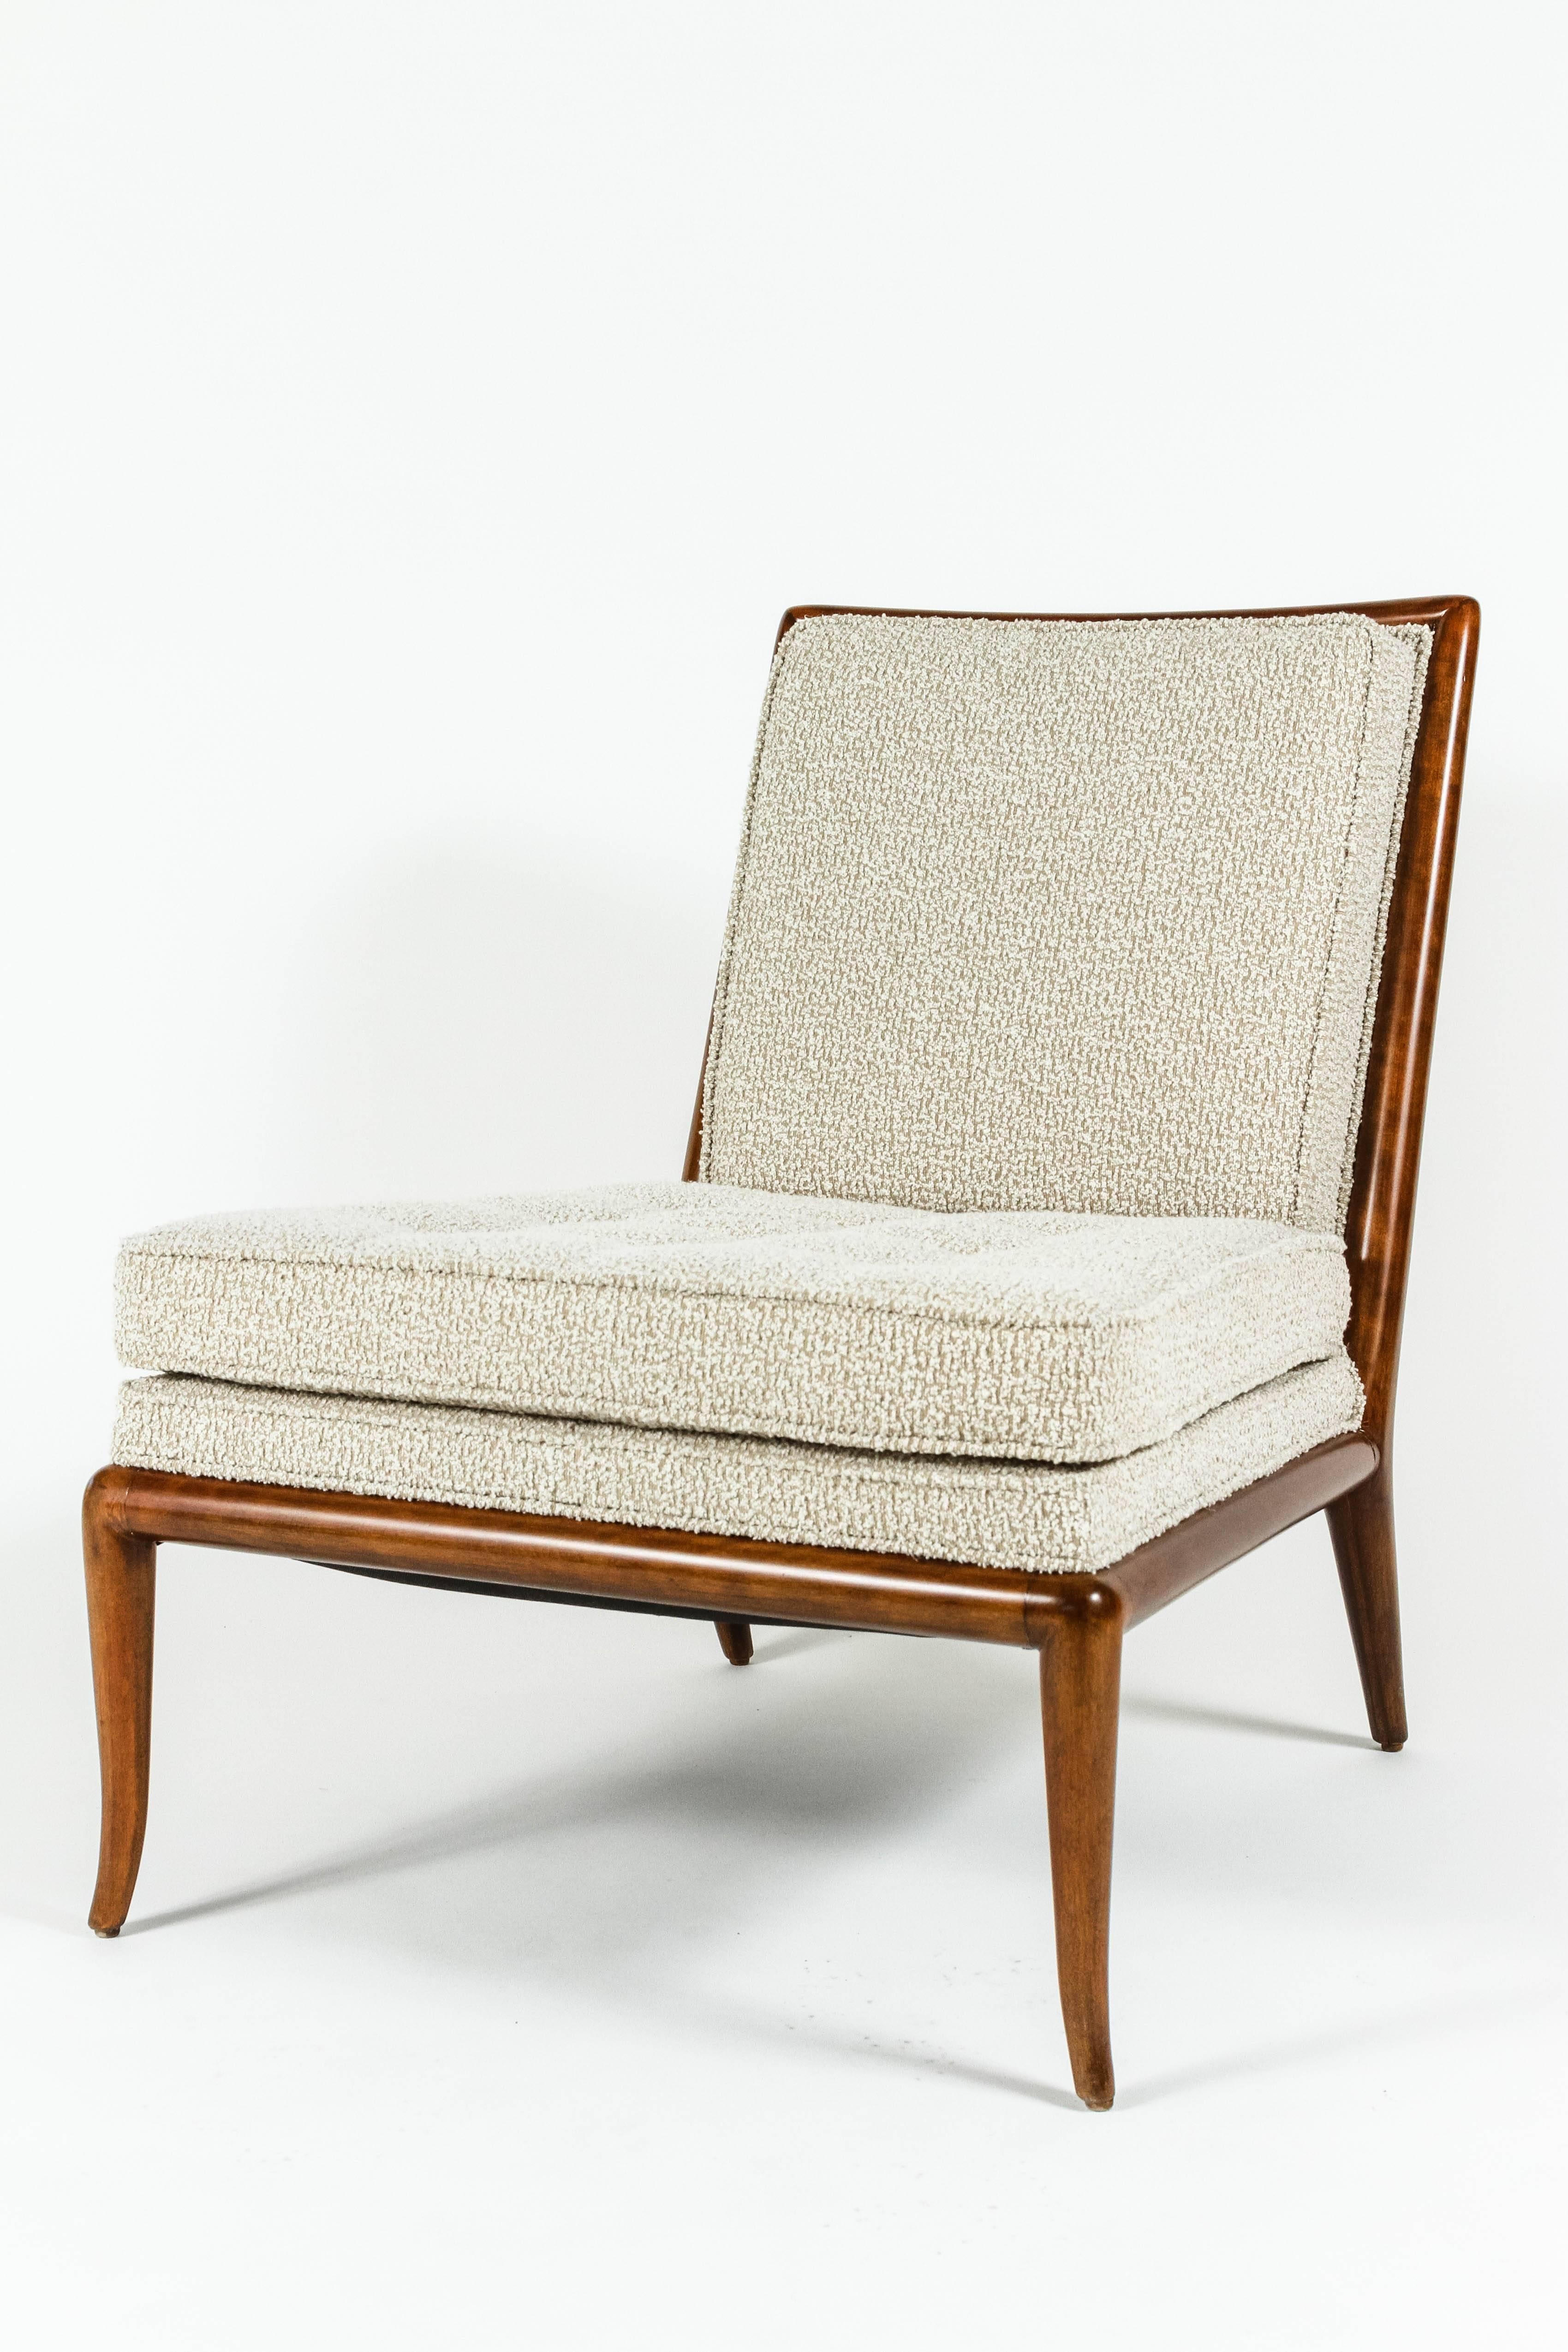 Mid-Century Modern Pair of Slipper Chairs by T.H. Robsjohn-Gibbings for Widdicomb